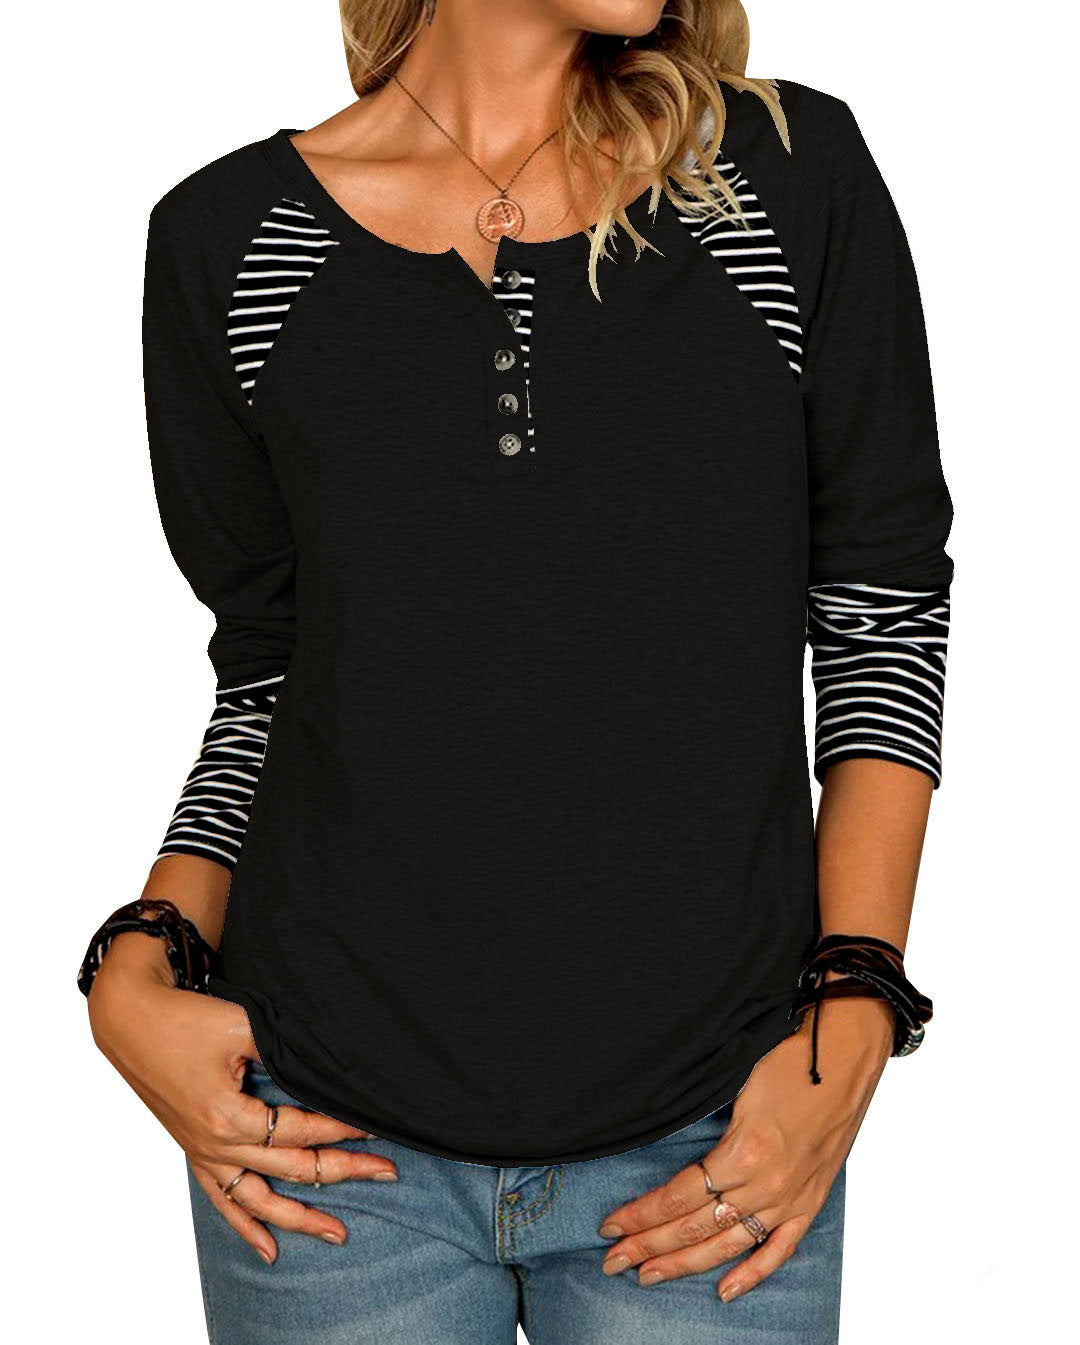 Women's Long Sleeve Striped Casual T-Shirt Top